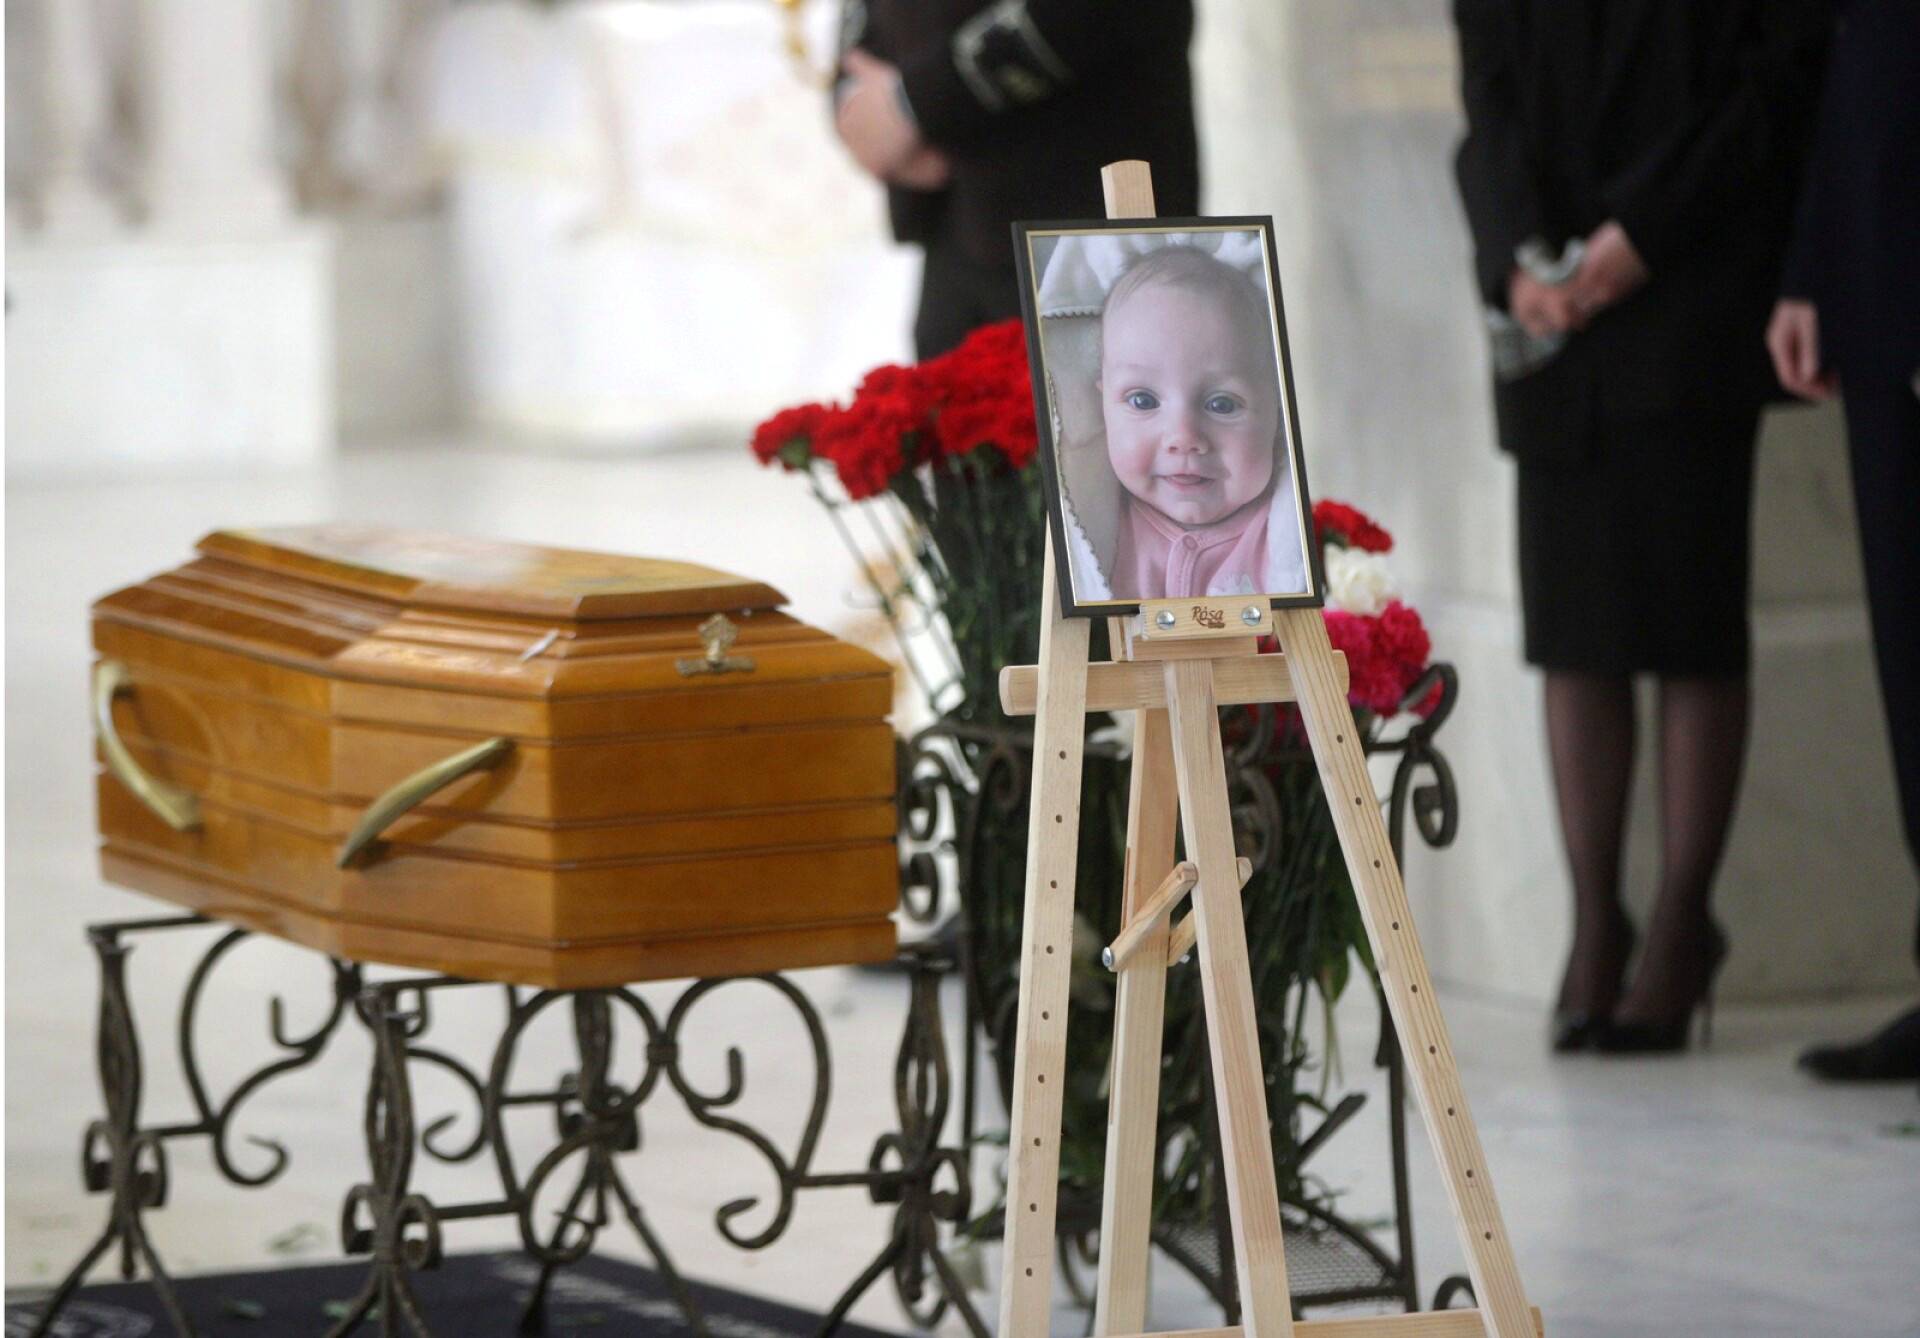 Kolme kuukautta vanha Kira kuoli ohjusiskussa äitinsä ja isoäitinsä kanssa Odessassa lauantaina. Hautajaisseremonia järjestettiin keskiviikkona 27. huhtikuuta.